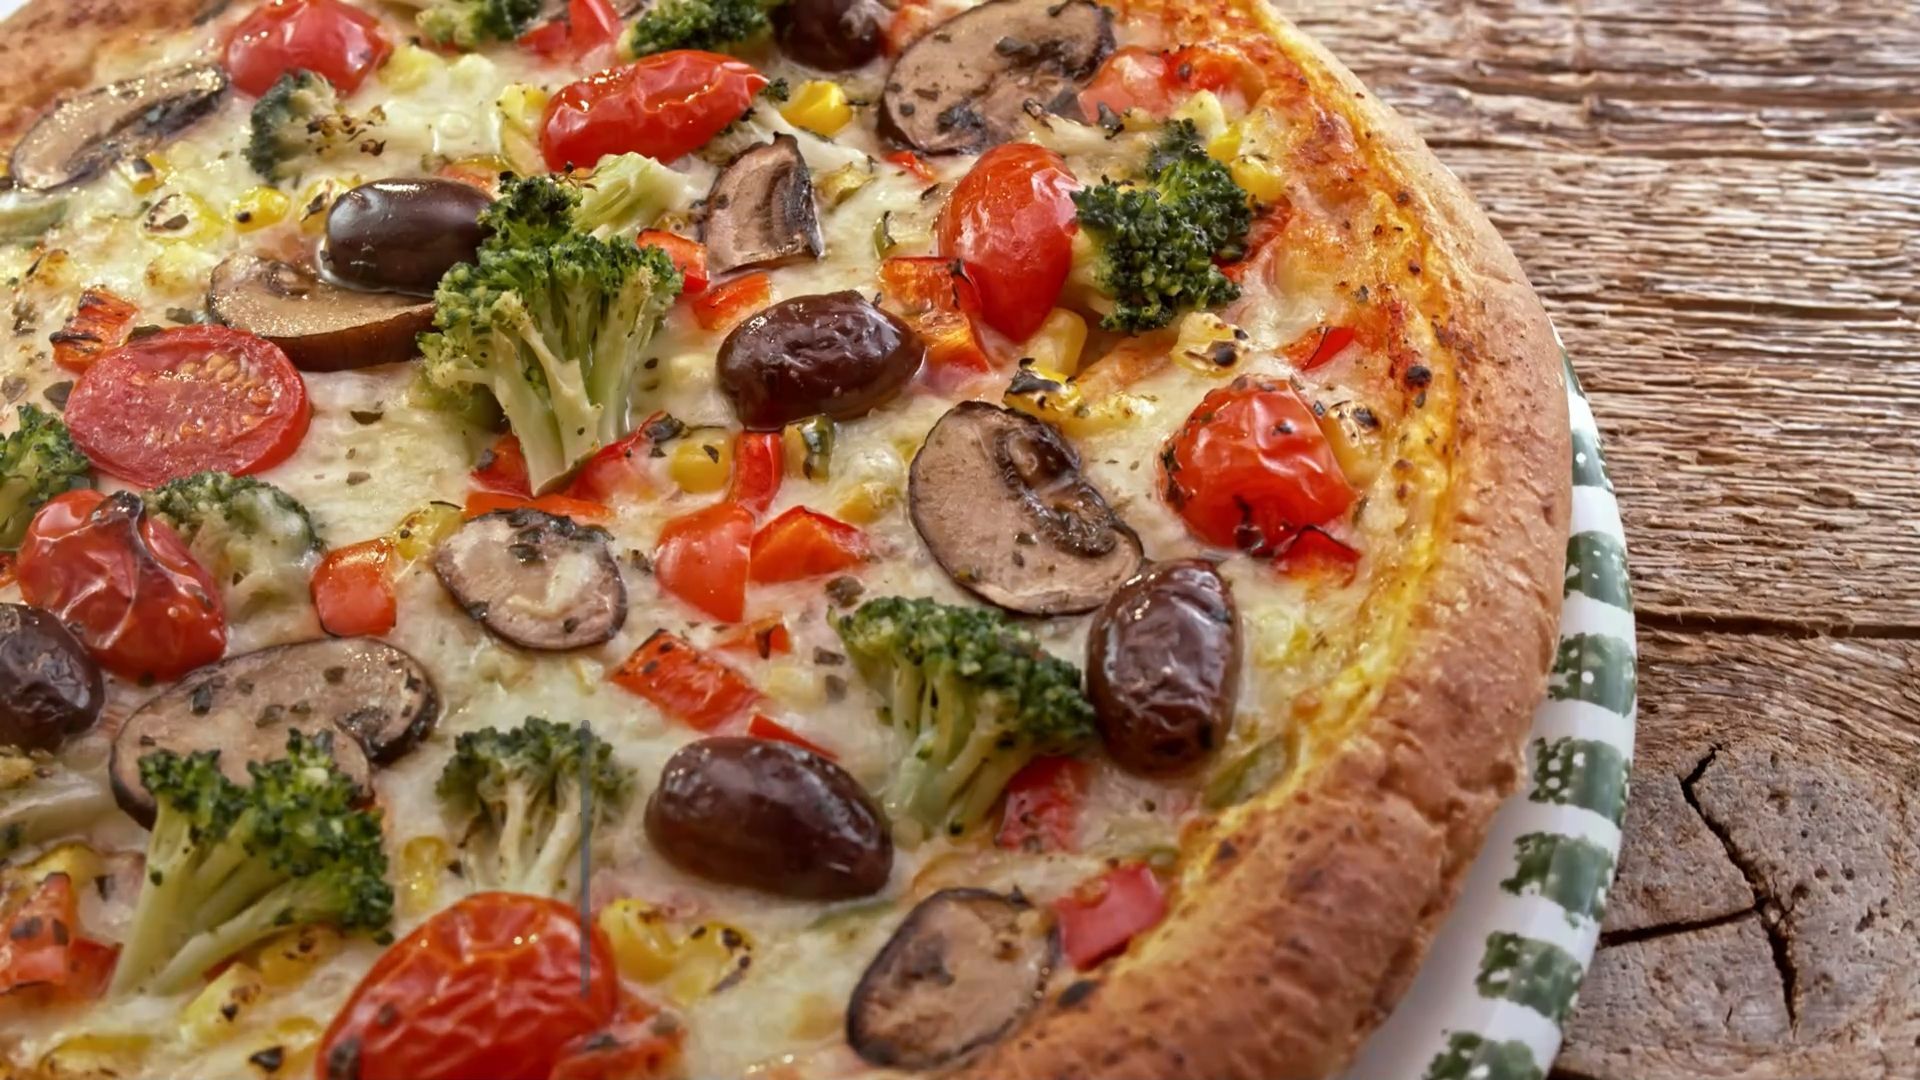 Pizza para desayunar: ¿más saludable que el muesli? La opinión de los expertos sorprende